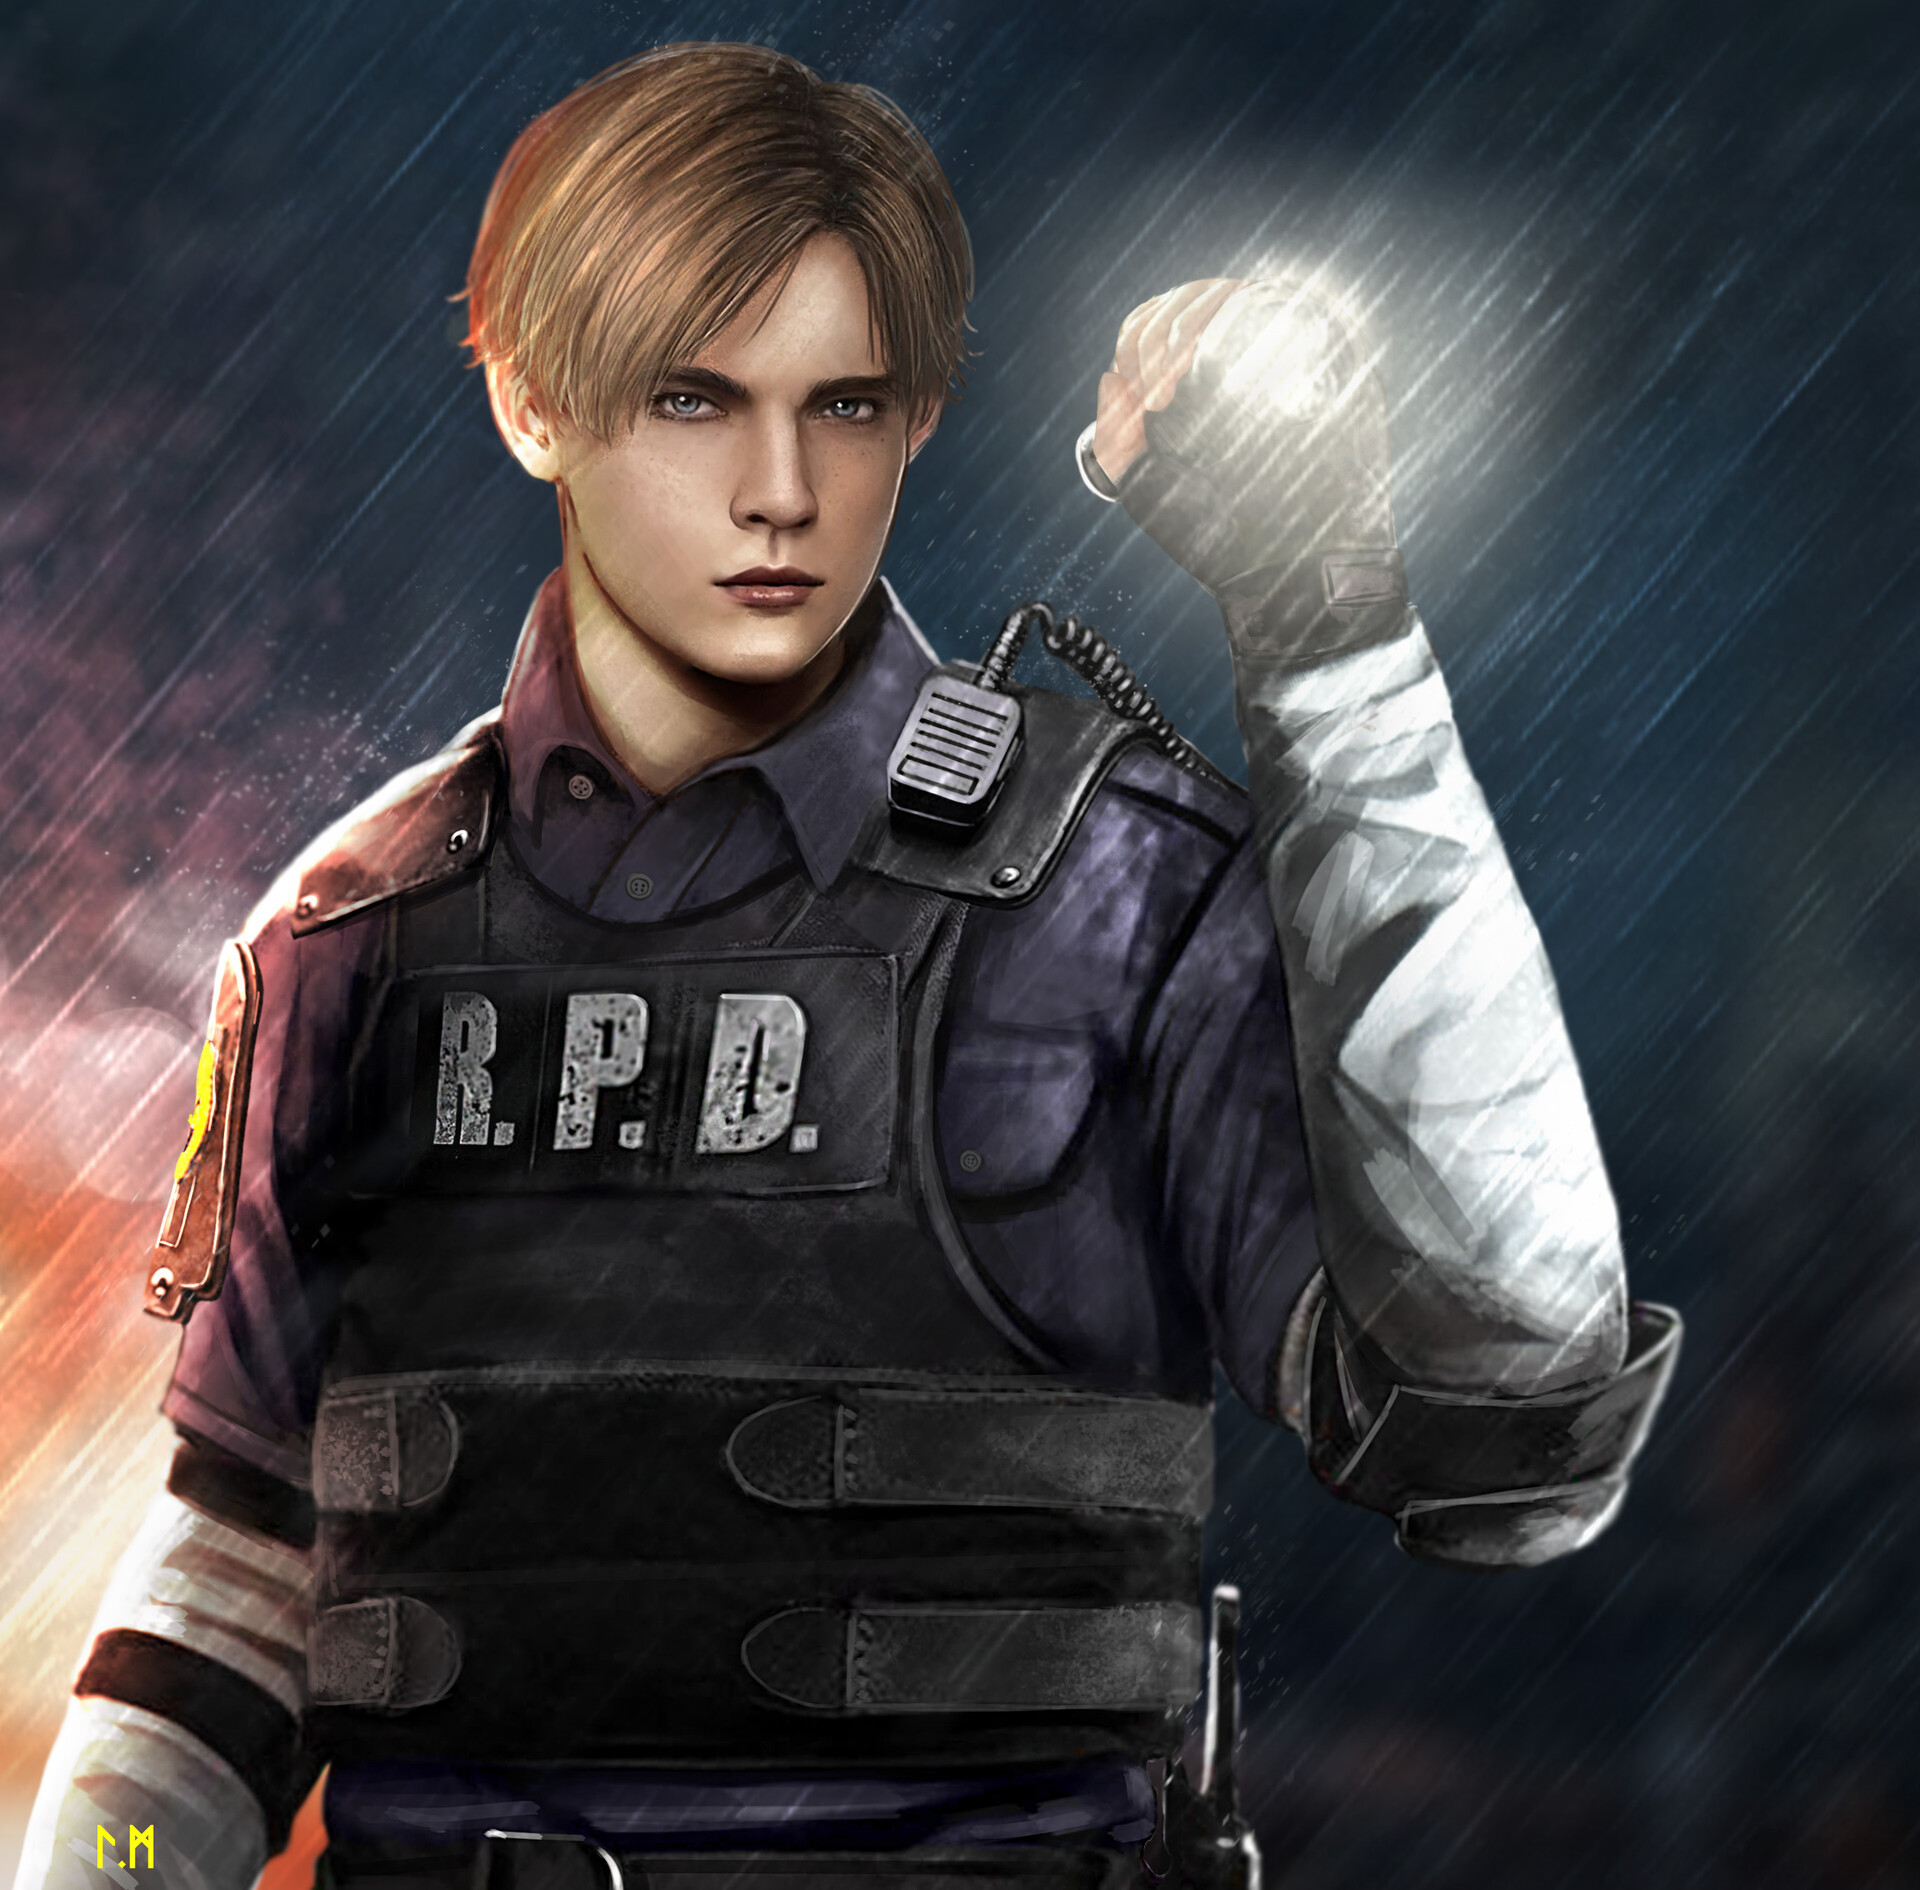 Artstation - Resident Evil 2 - Leon Kennedy - Fanart